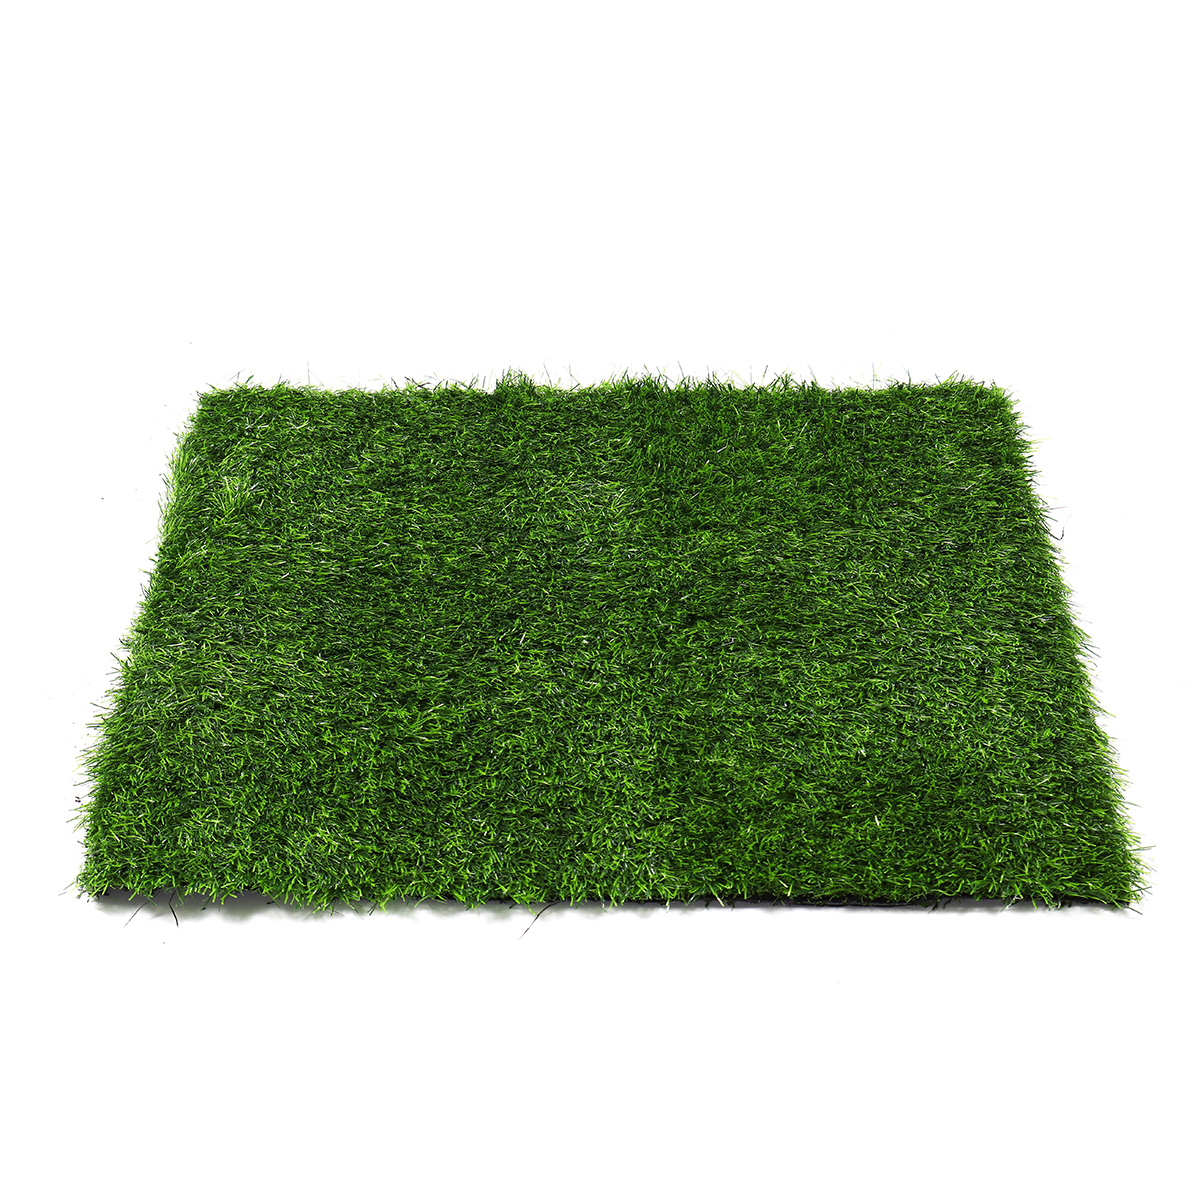 Artificial-Green-Grass-Carpet-Mat-Artificial-Lawns-Turf-Carpets-For-Home-Garden-Micro-Landscape-1726933-5